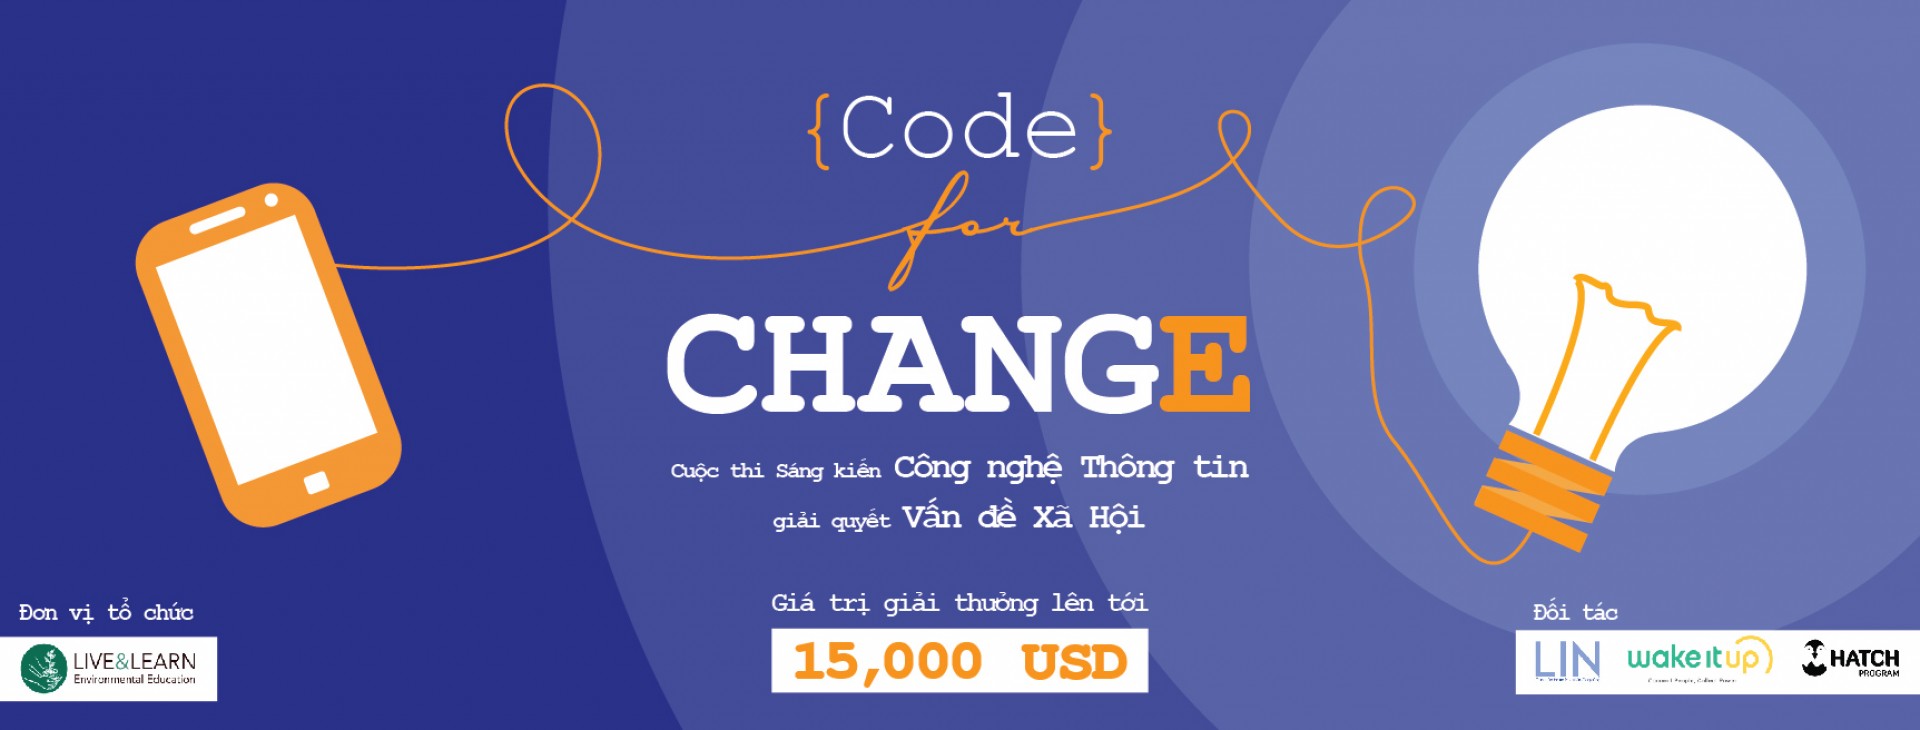 Cuộc Thi "Code For Change 2016" Giải Thưởng $15,000